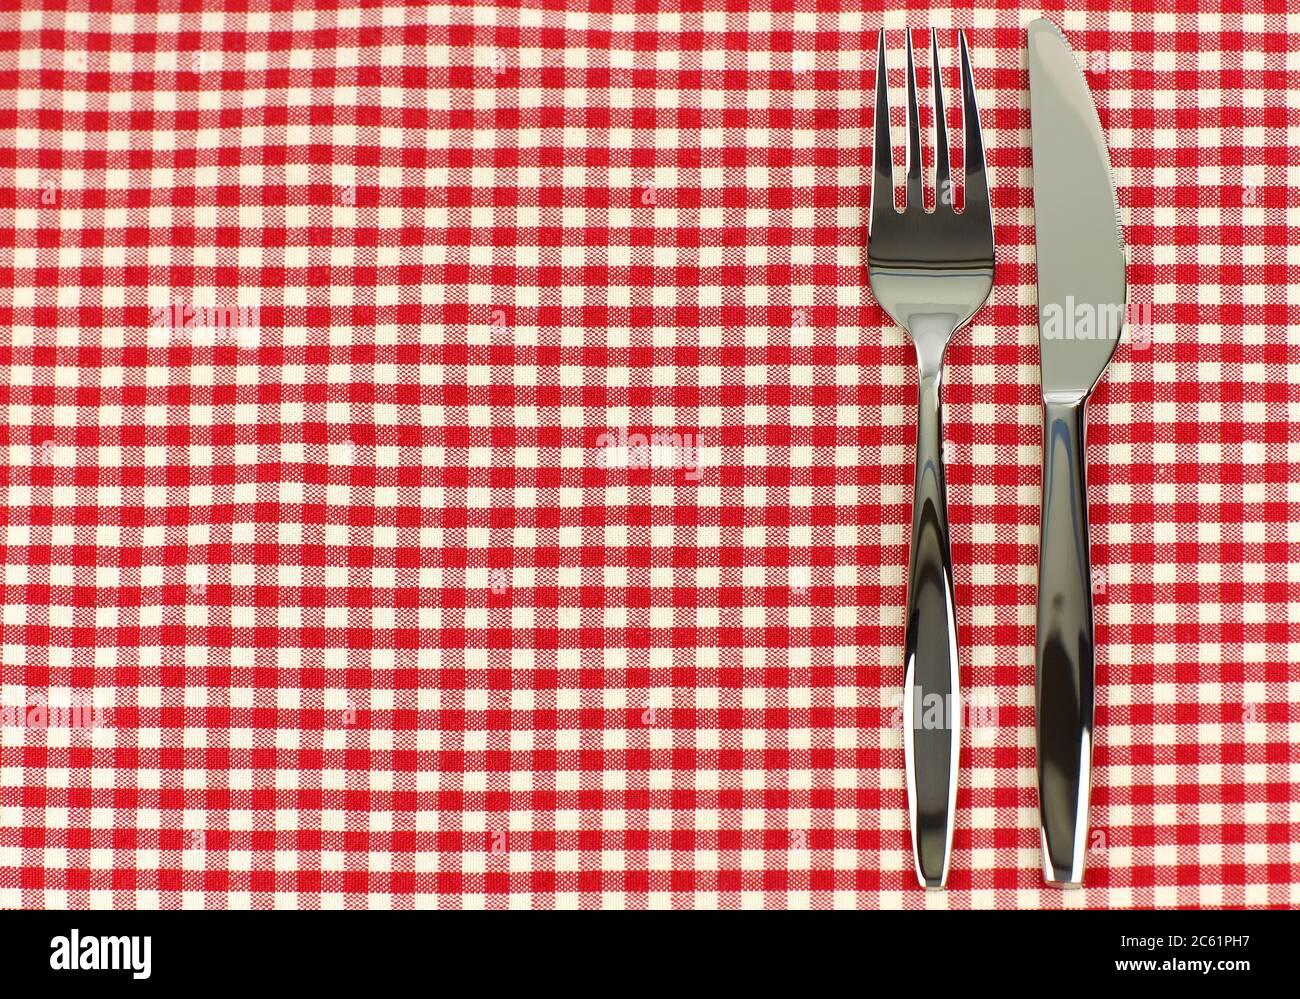 cuchillo brillante y tenedor en un mantel de cuadros rojo y blanco Foto de stock